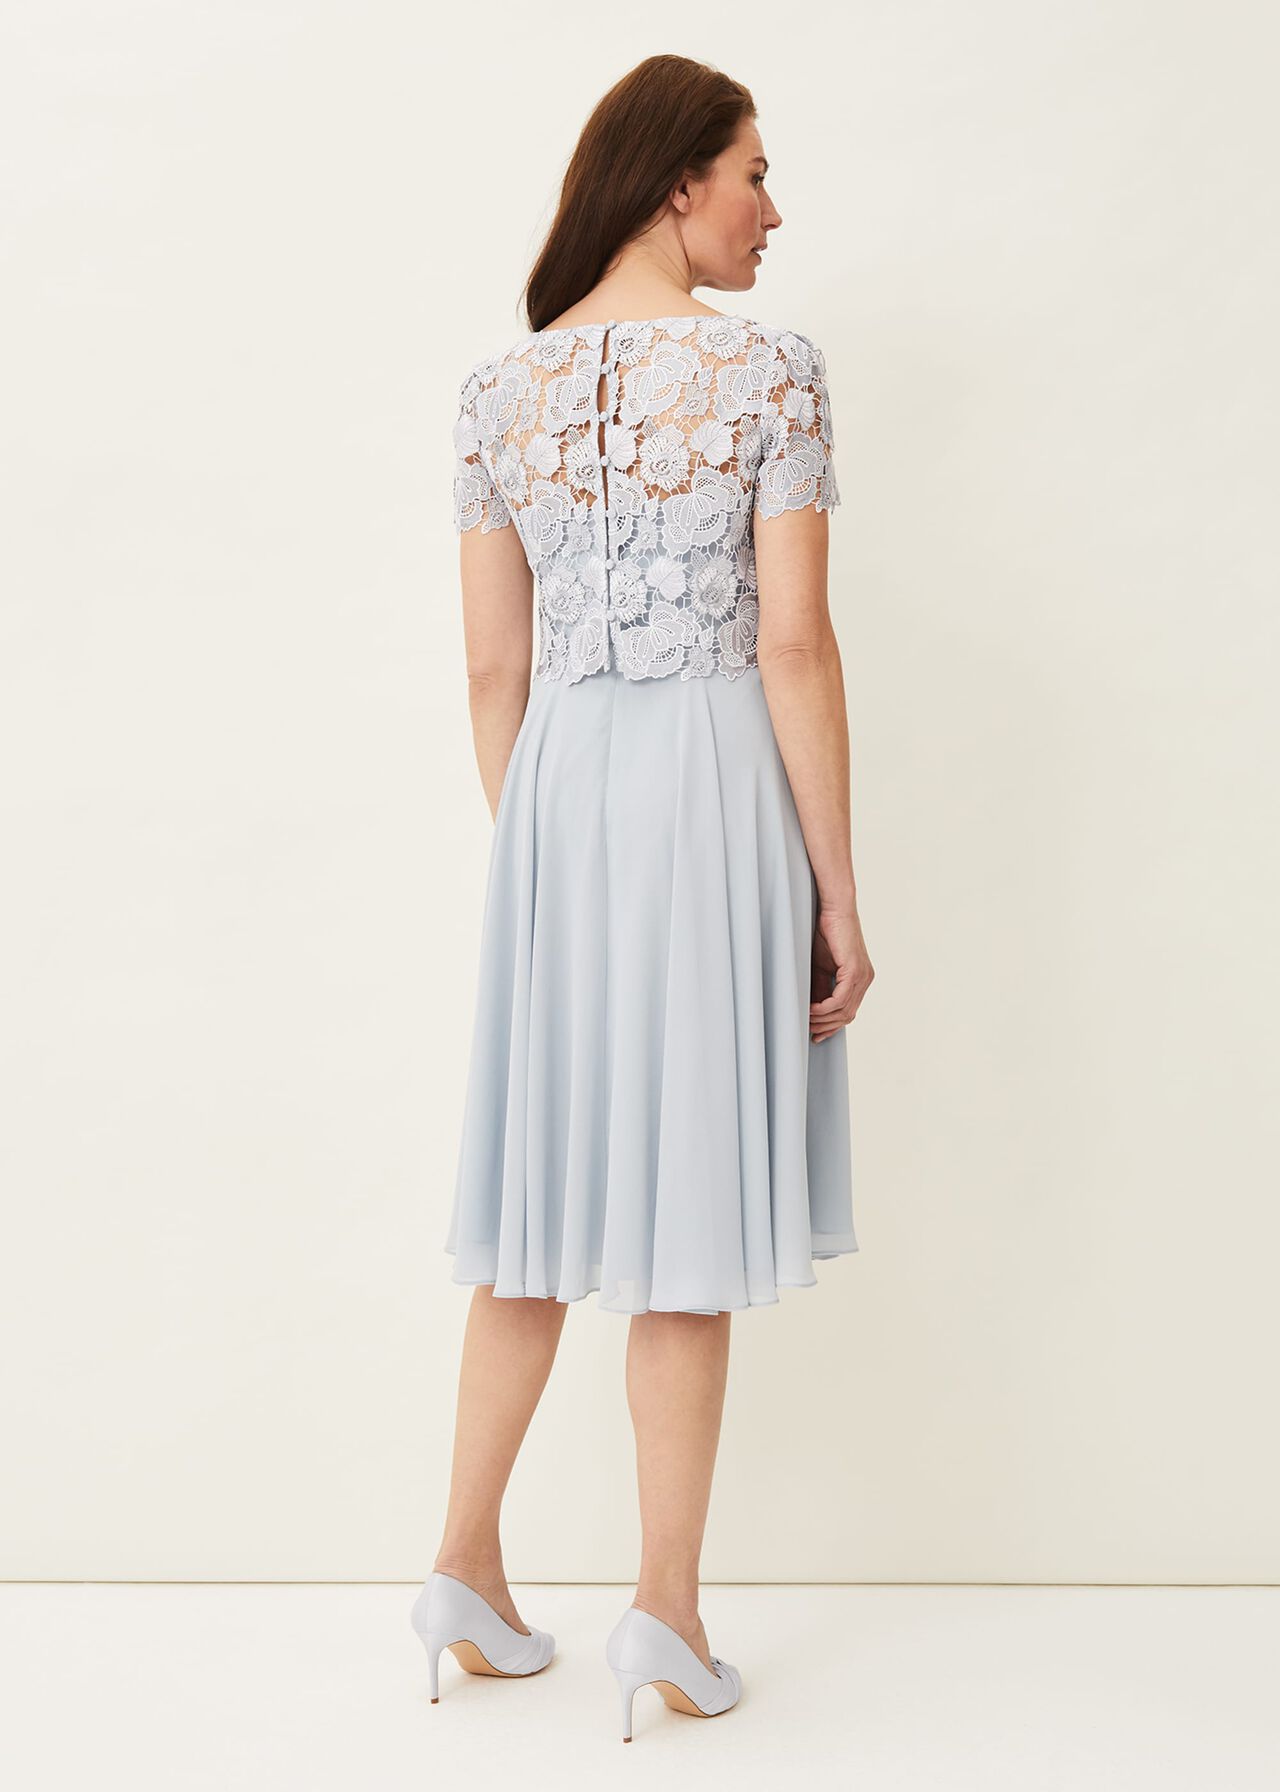 Brandie Lace Bodice Chiffon Dress